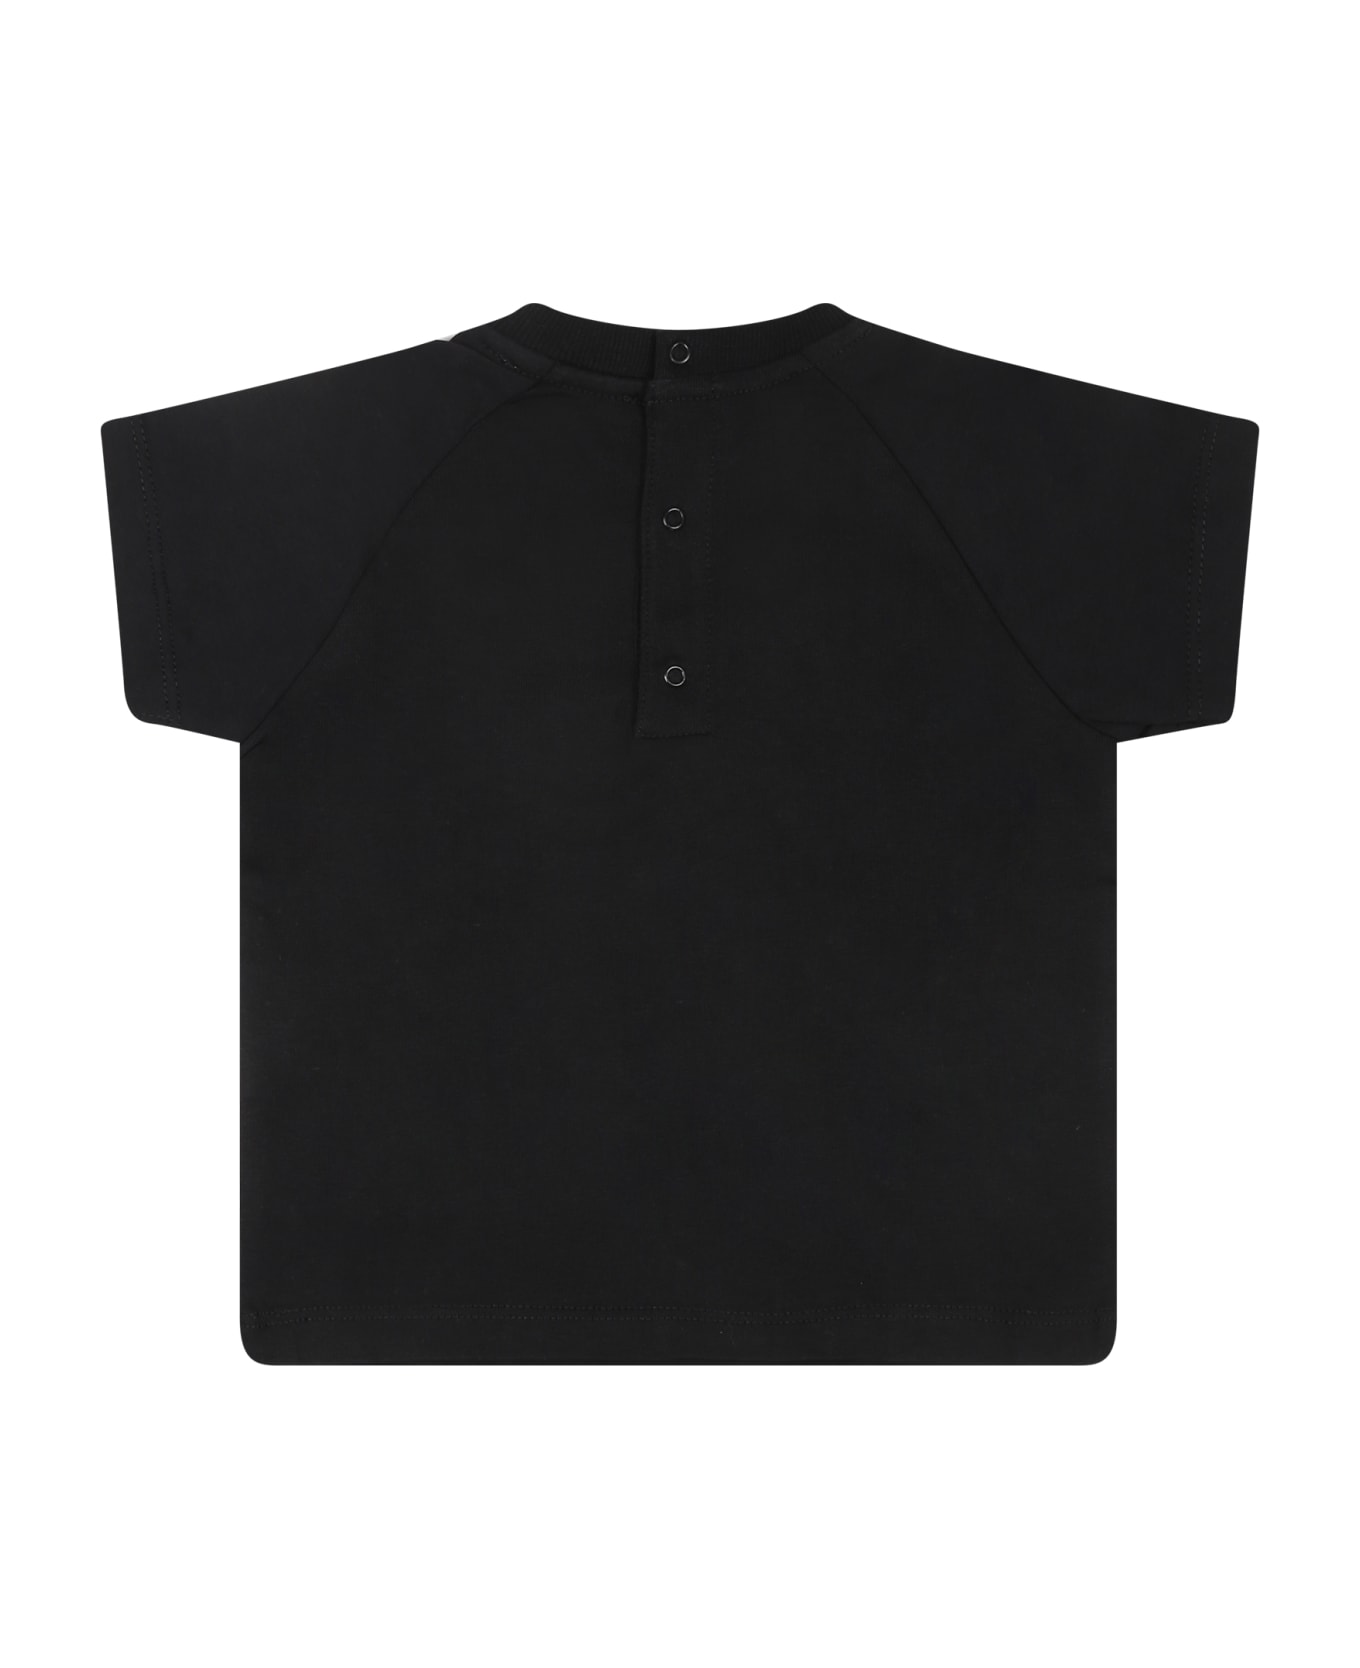 Moschino T-shirt Nera Per Neonati Con Teddy Bear E Logo - Black